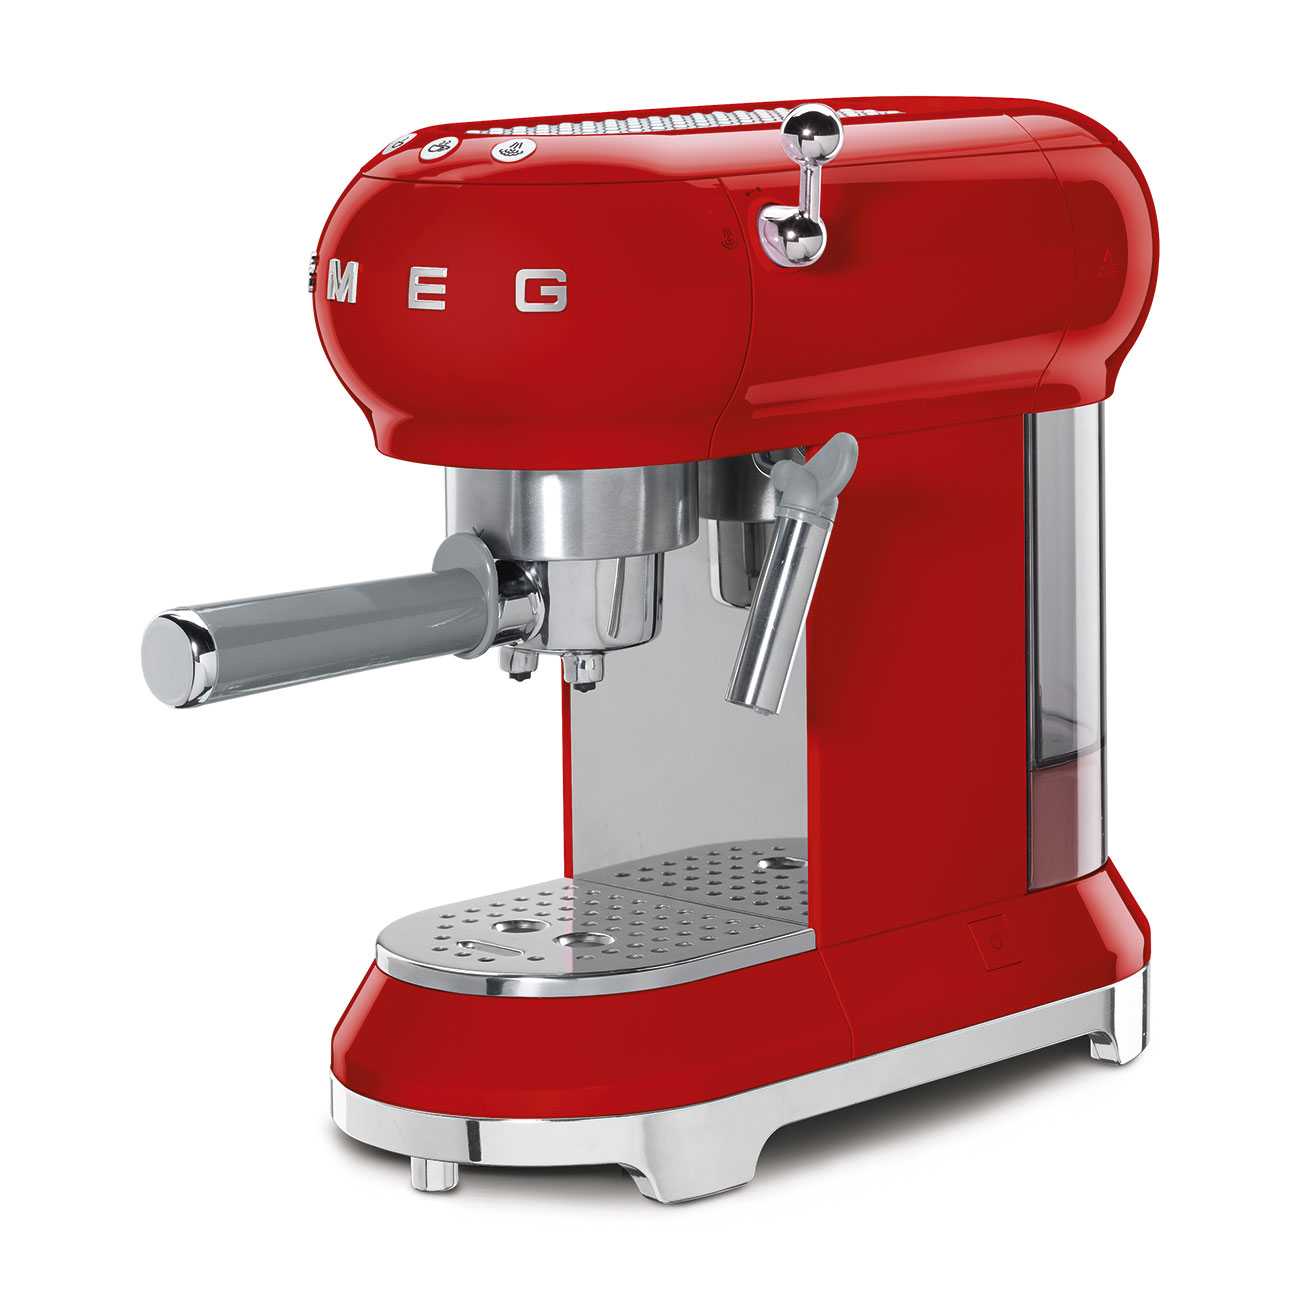 Smeg Red Espresso Manual Coffee Machine_2